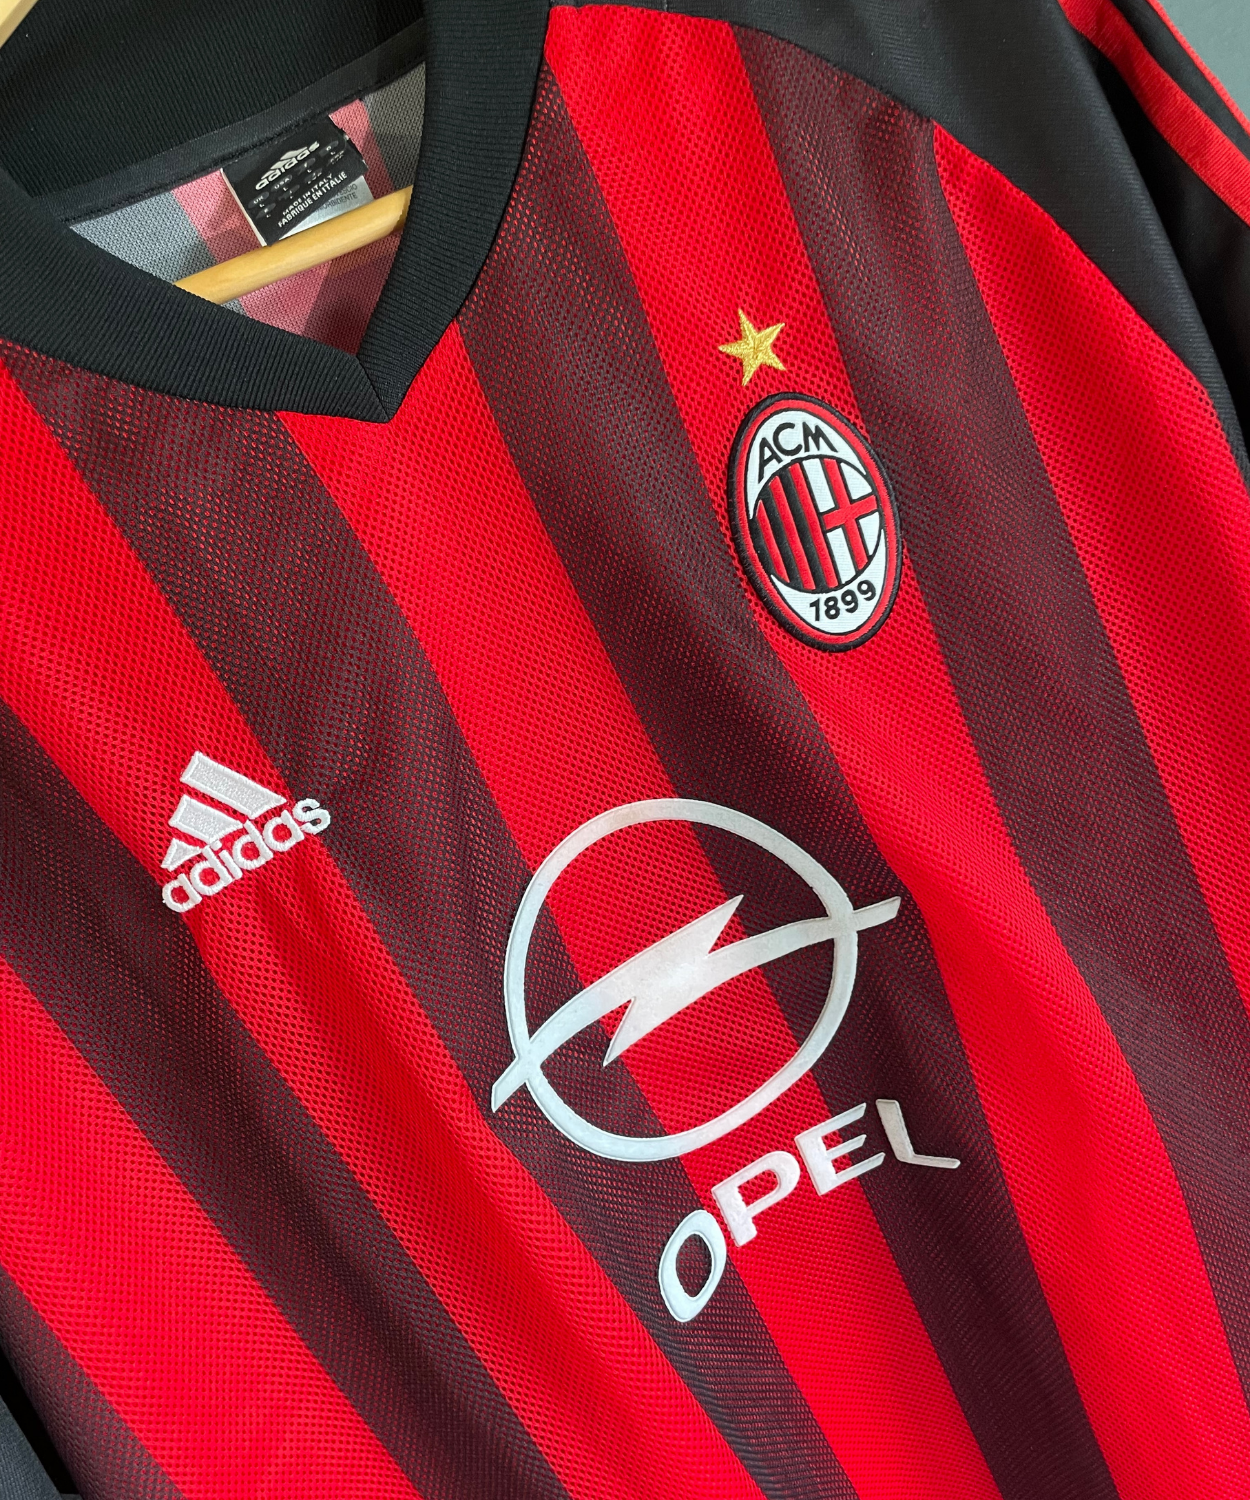 AC Milan 2002/03 Nesta Home Kit (L)